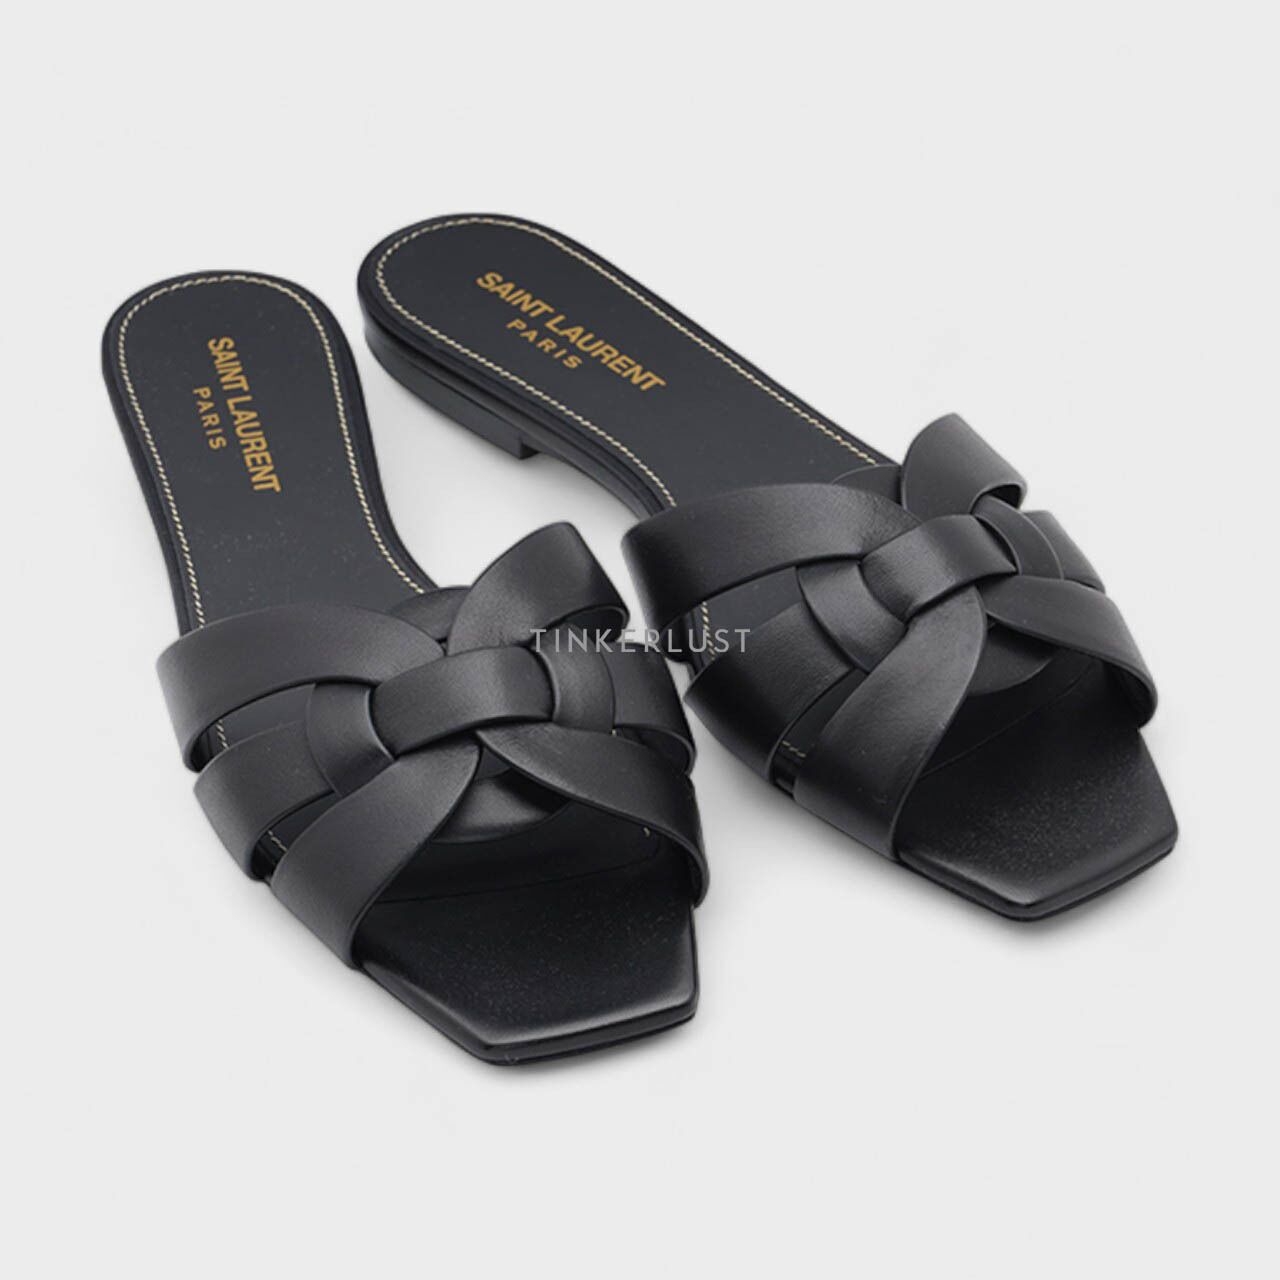 Saint Laurent Nu Pieds 0.5cm Slippers in Black Calf Sandals